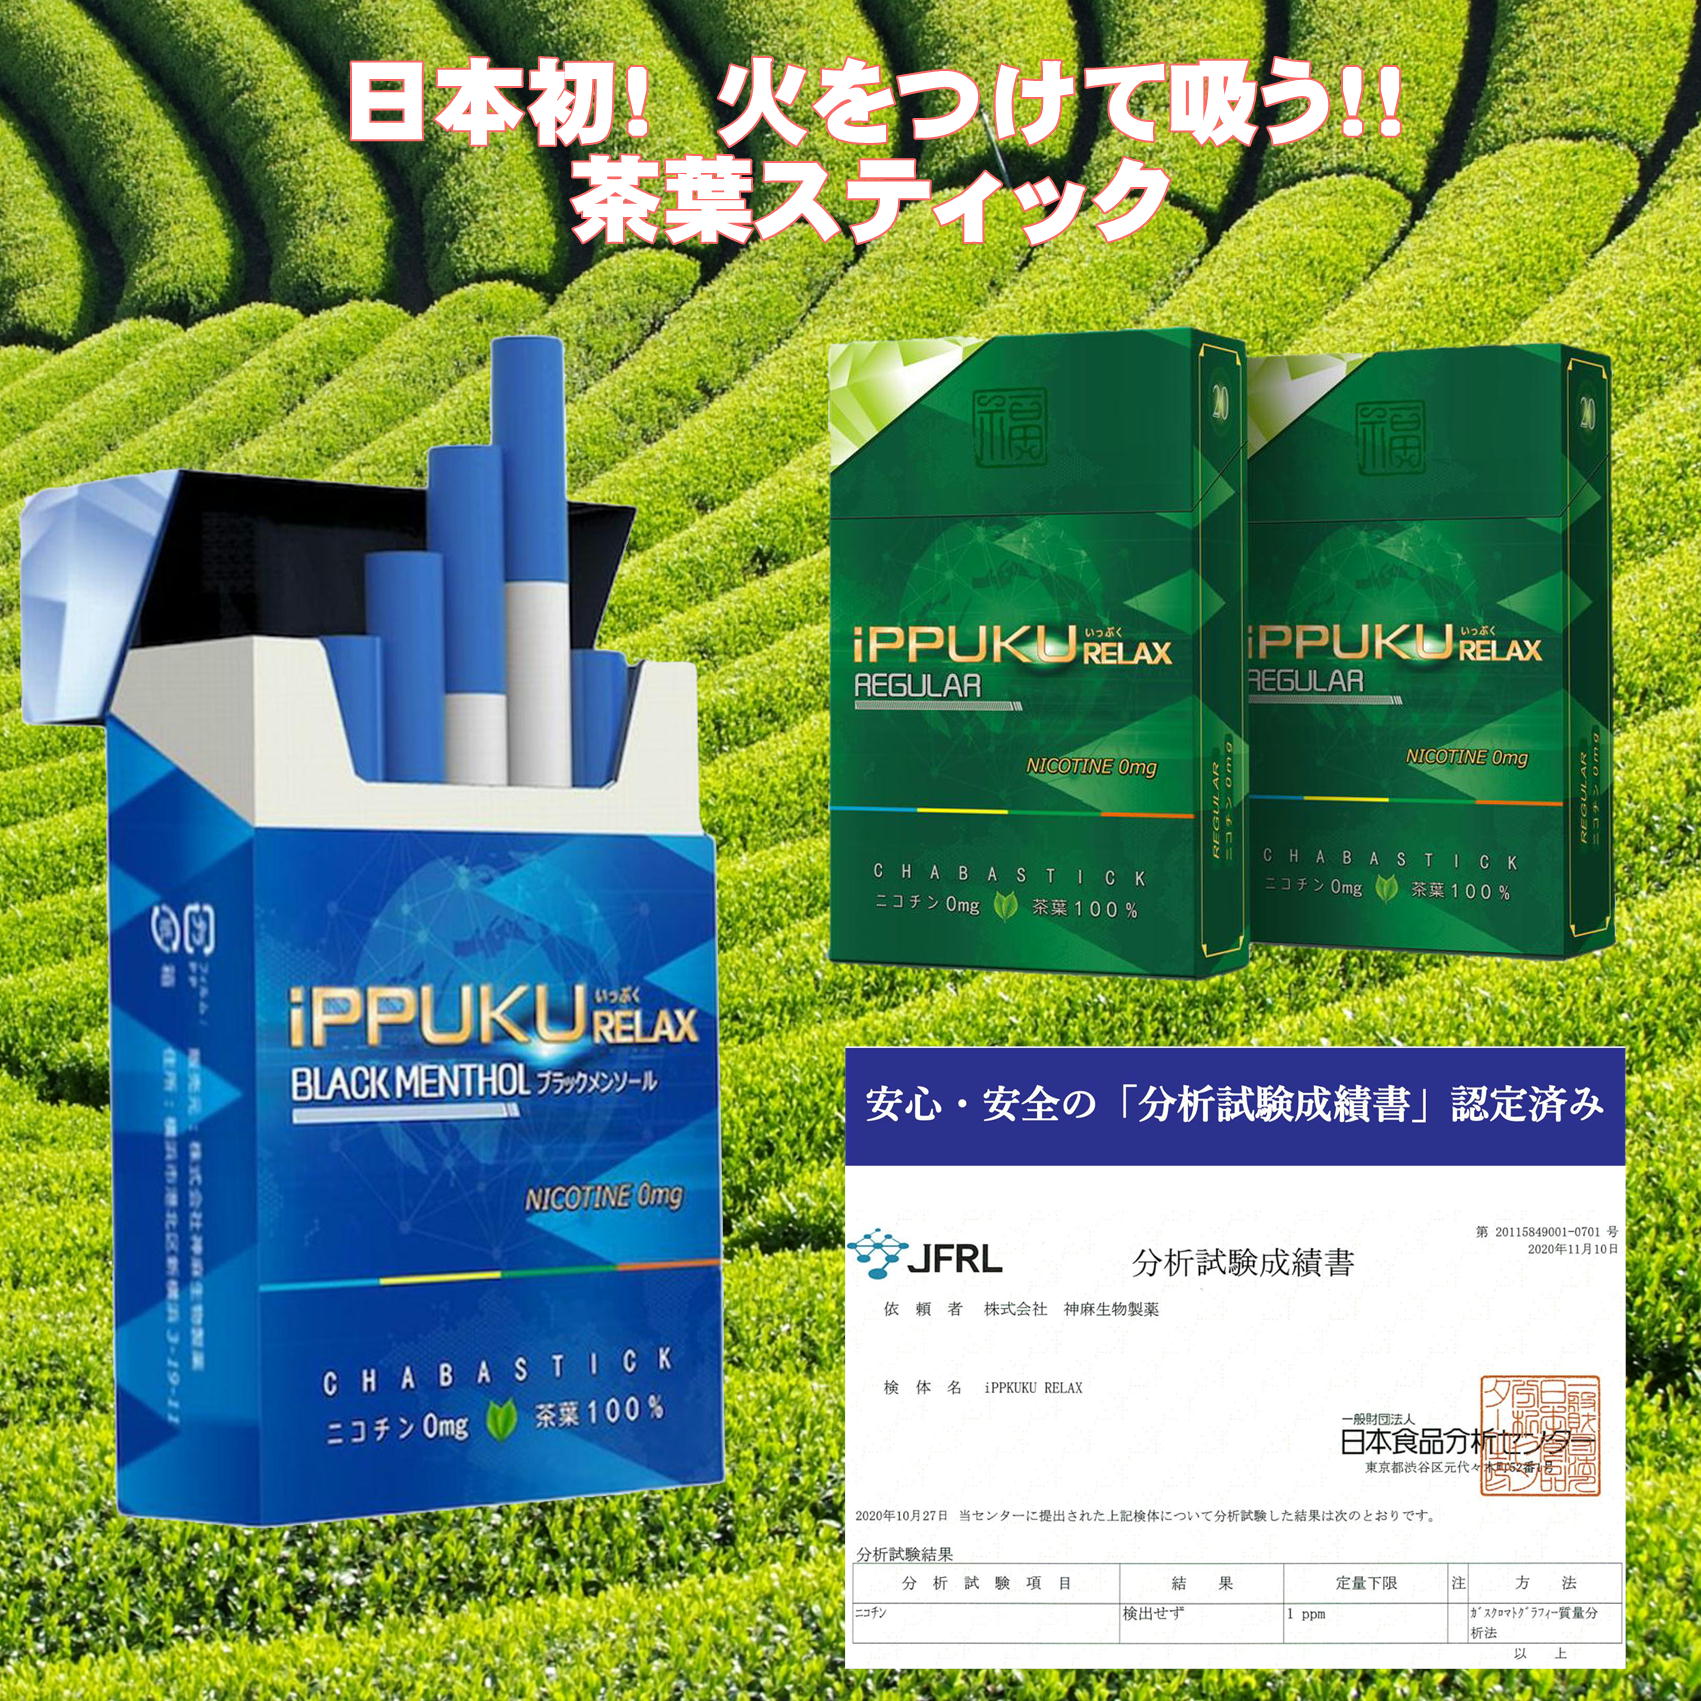 全2種類 iPPUKU RELAX 茶葉スティック 禁煙タバコ 禁煙グッズ 